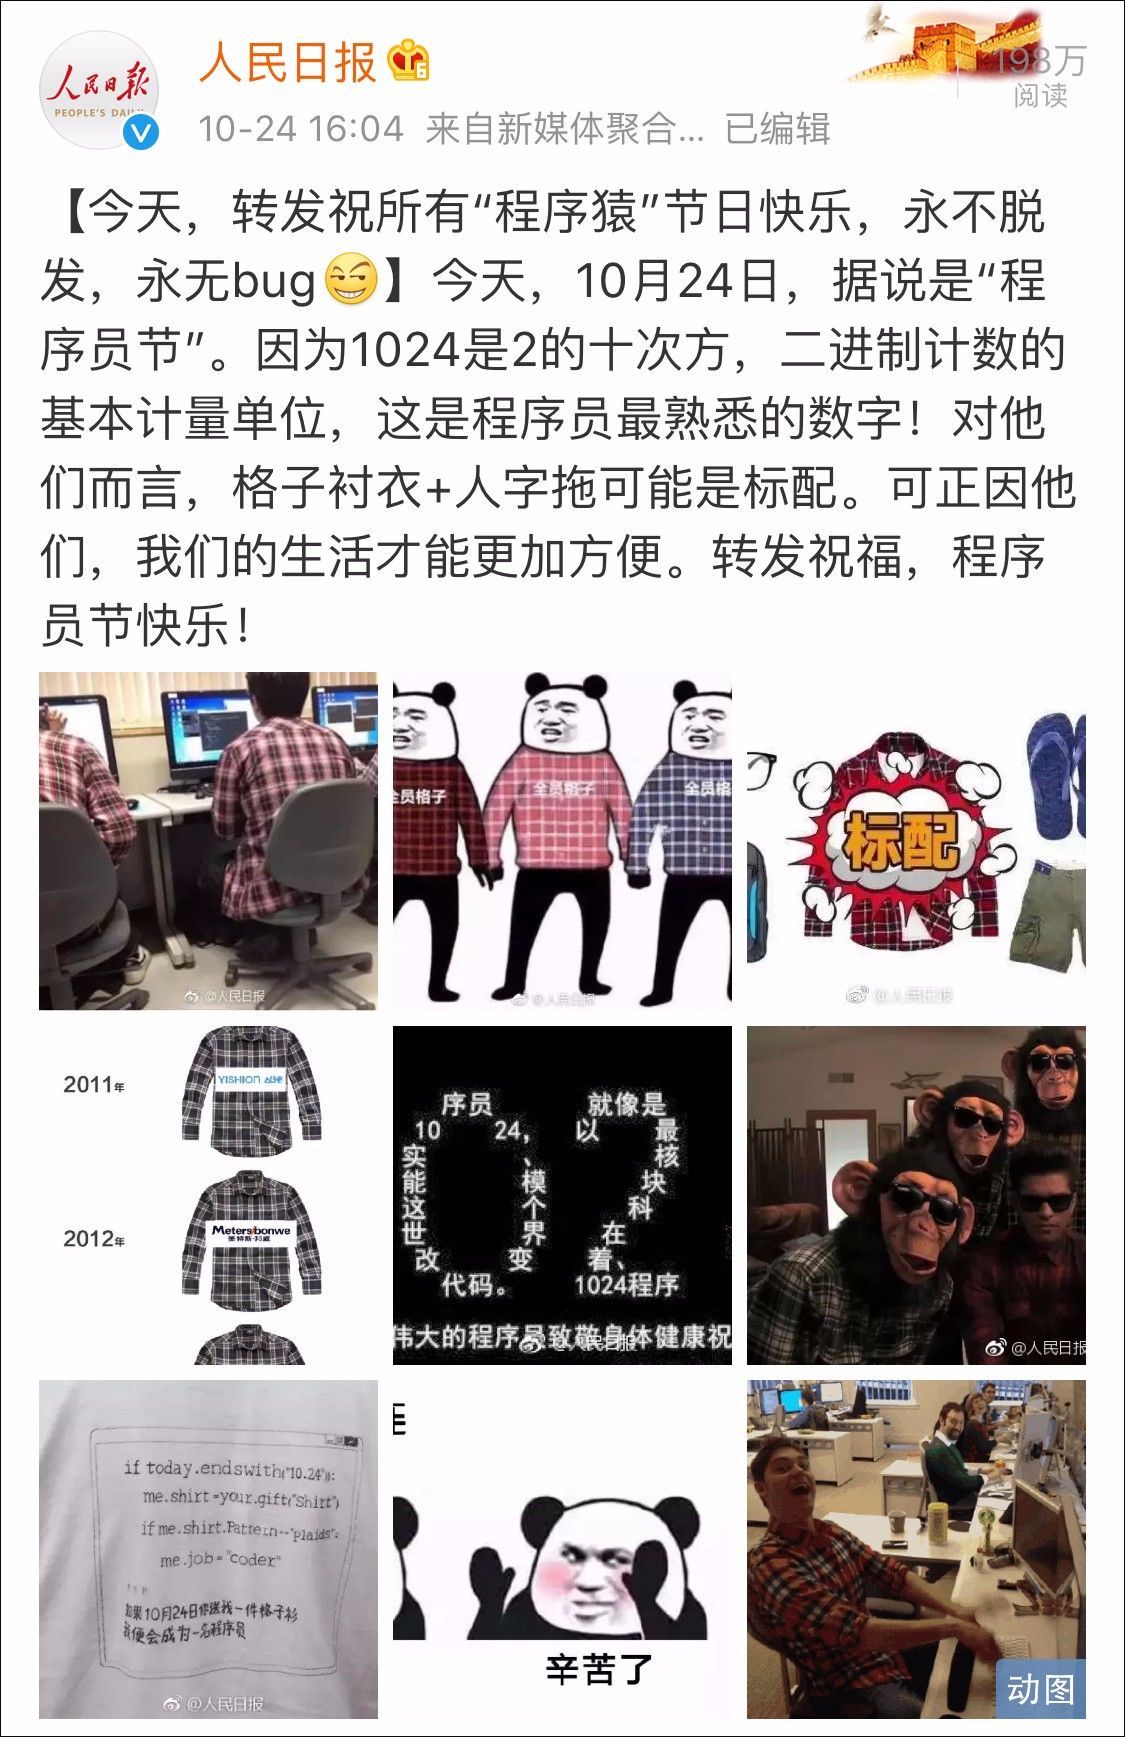 人民日报微博祝程序员1024节日快乐 格子衬衫